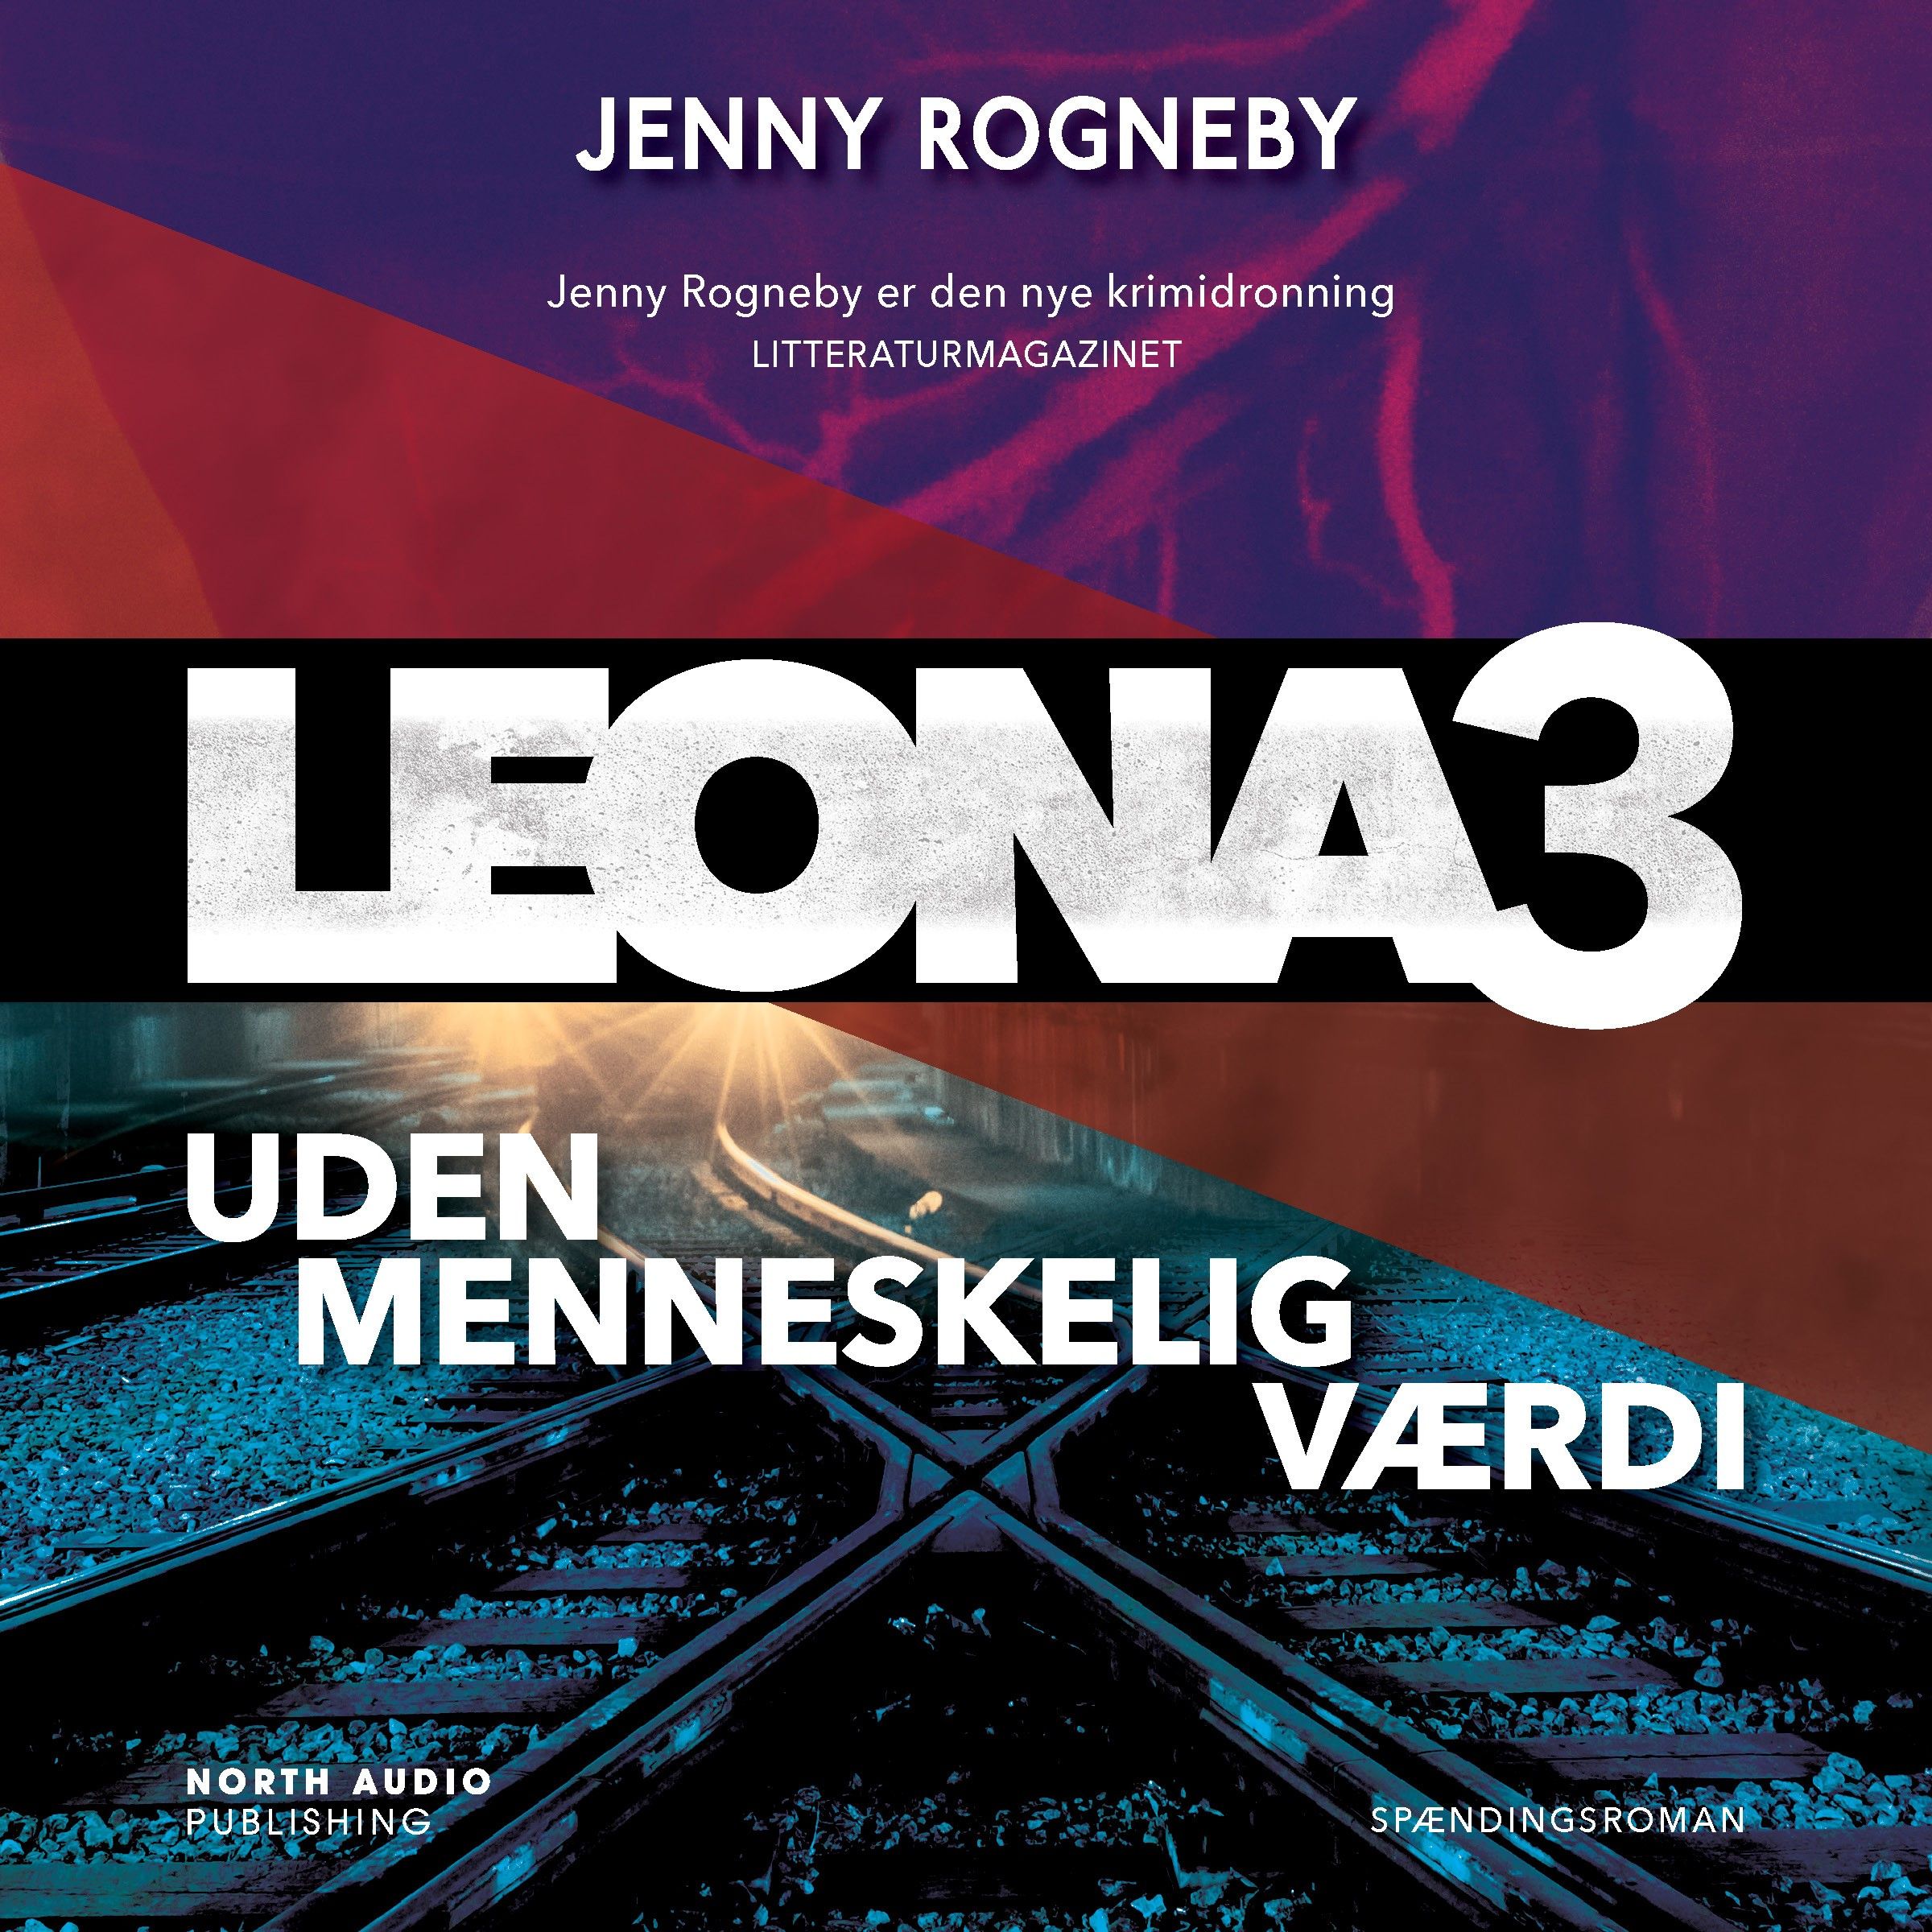 Leona - uden menneskelig værdi, lydbog af Jenny Rogneby